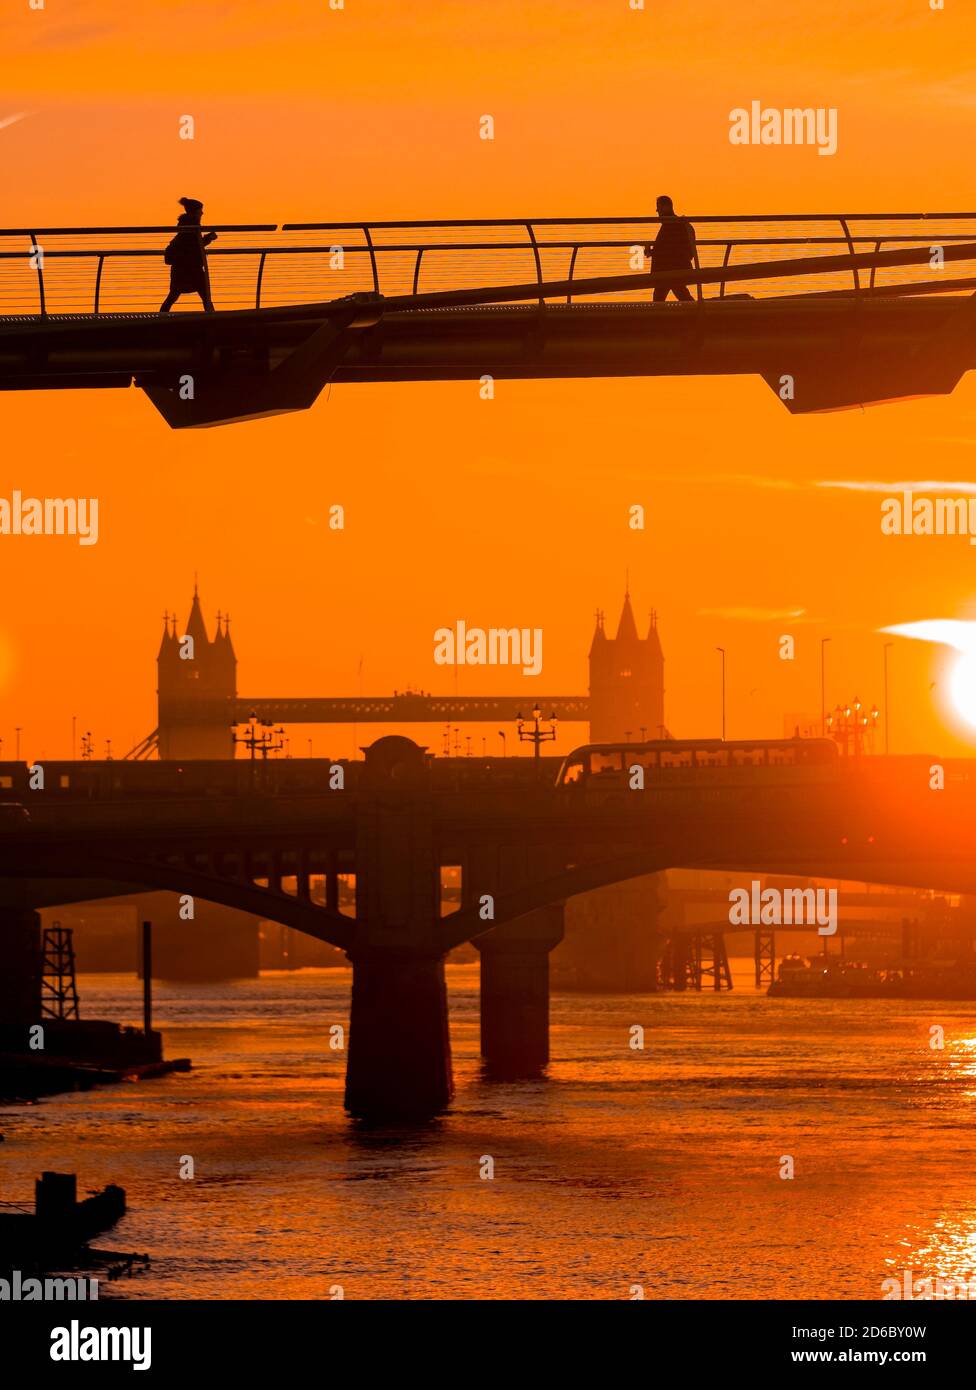 Lever du soleil sur la Tamise et le Millennium Bridge, Londres, Angleterre Banque D'Images